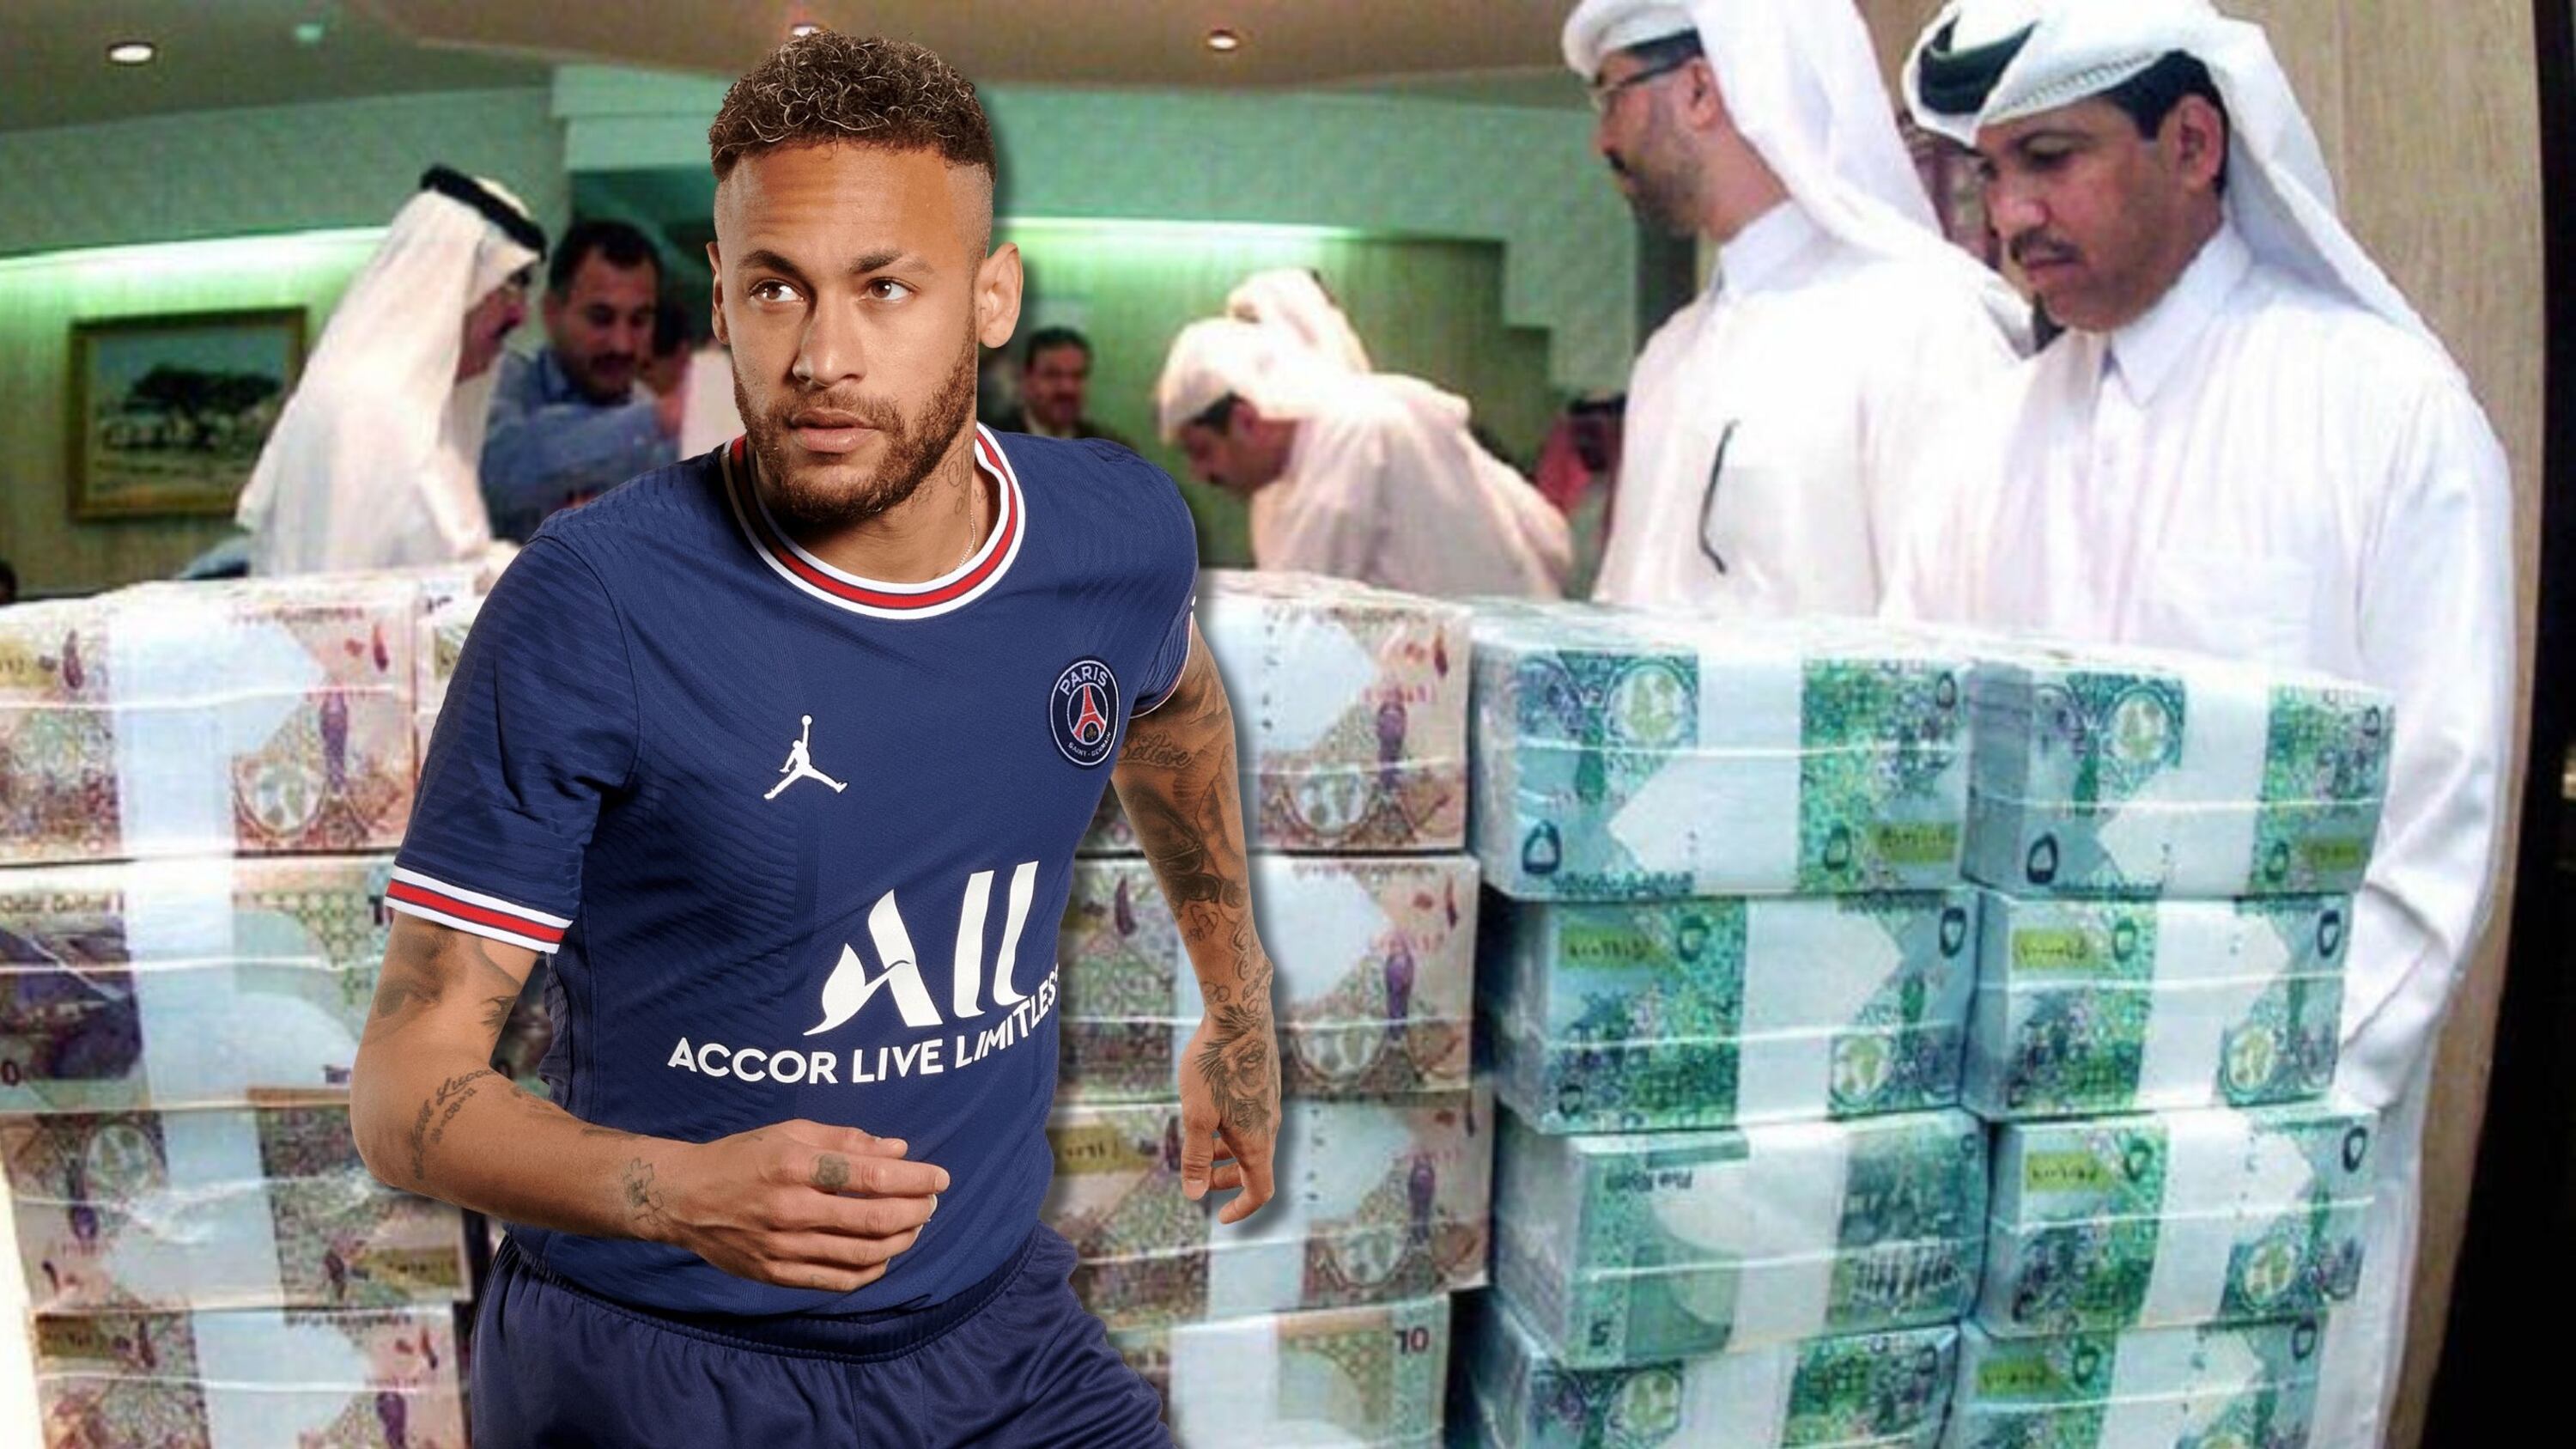 El equipo más millonario del mundo puede fichar a Neymar y pagarle 40 millones